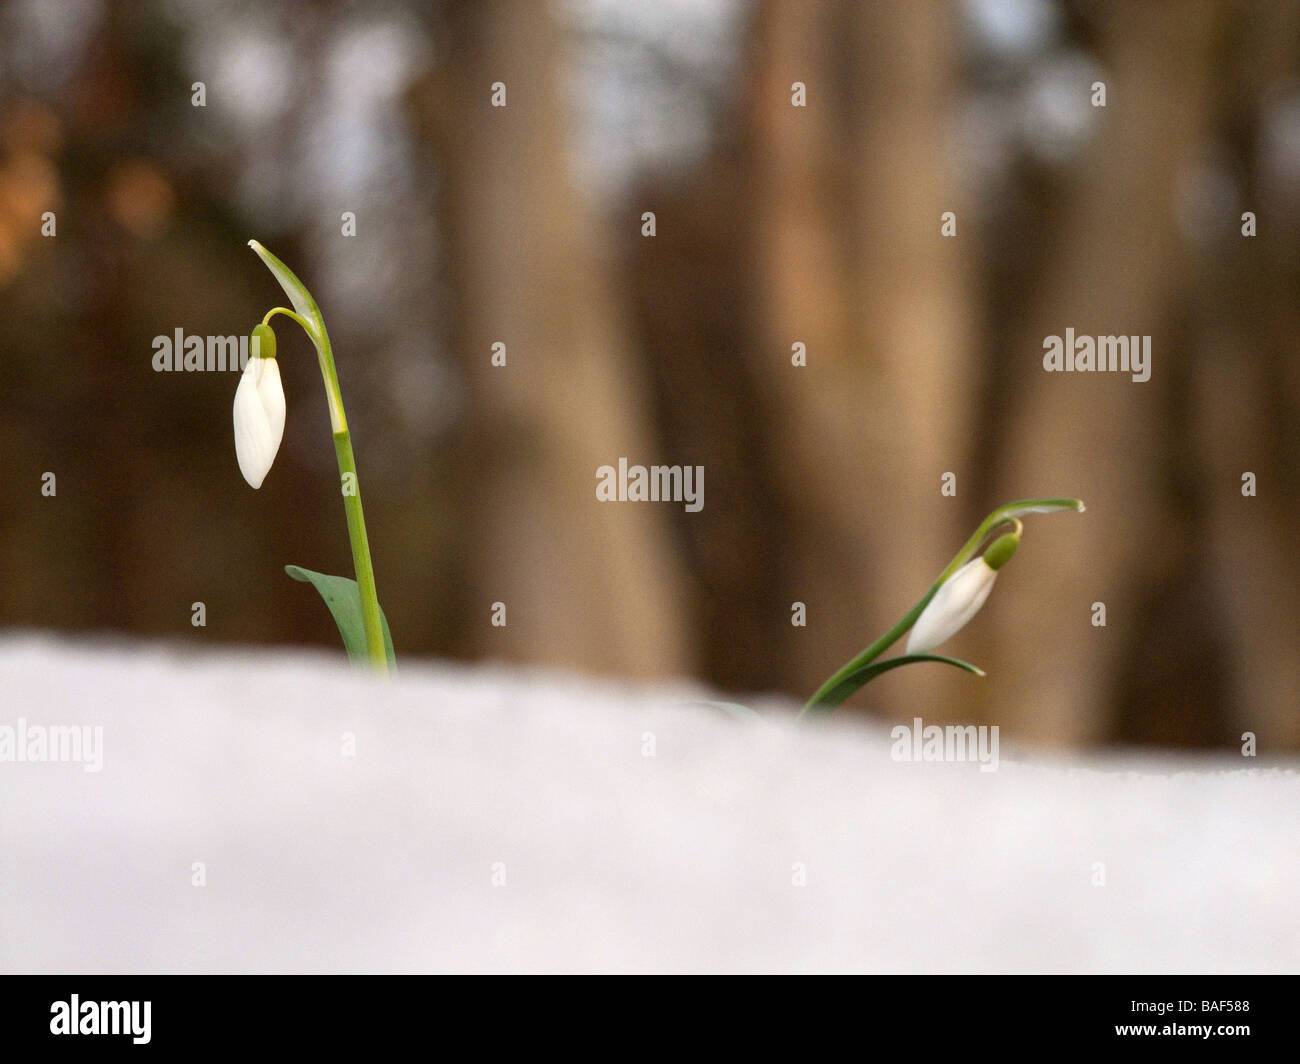 Comune ( snowdrop Galanthus nivalis ) nella neve Foto Stock